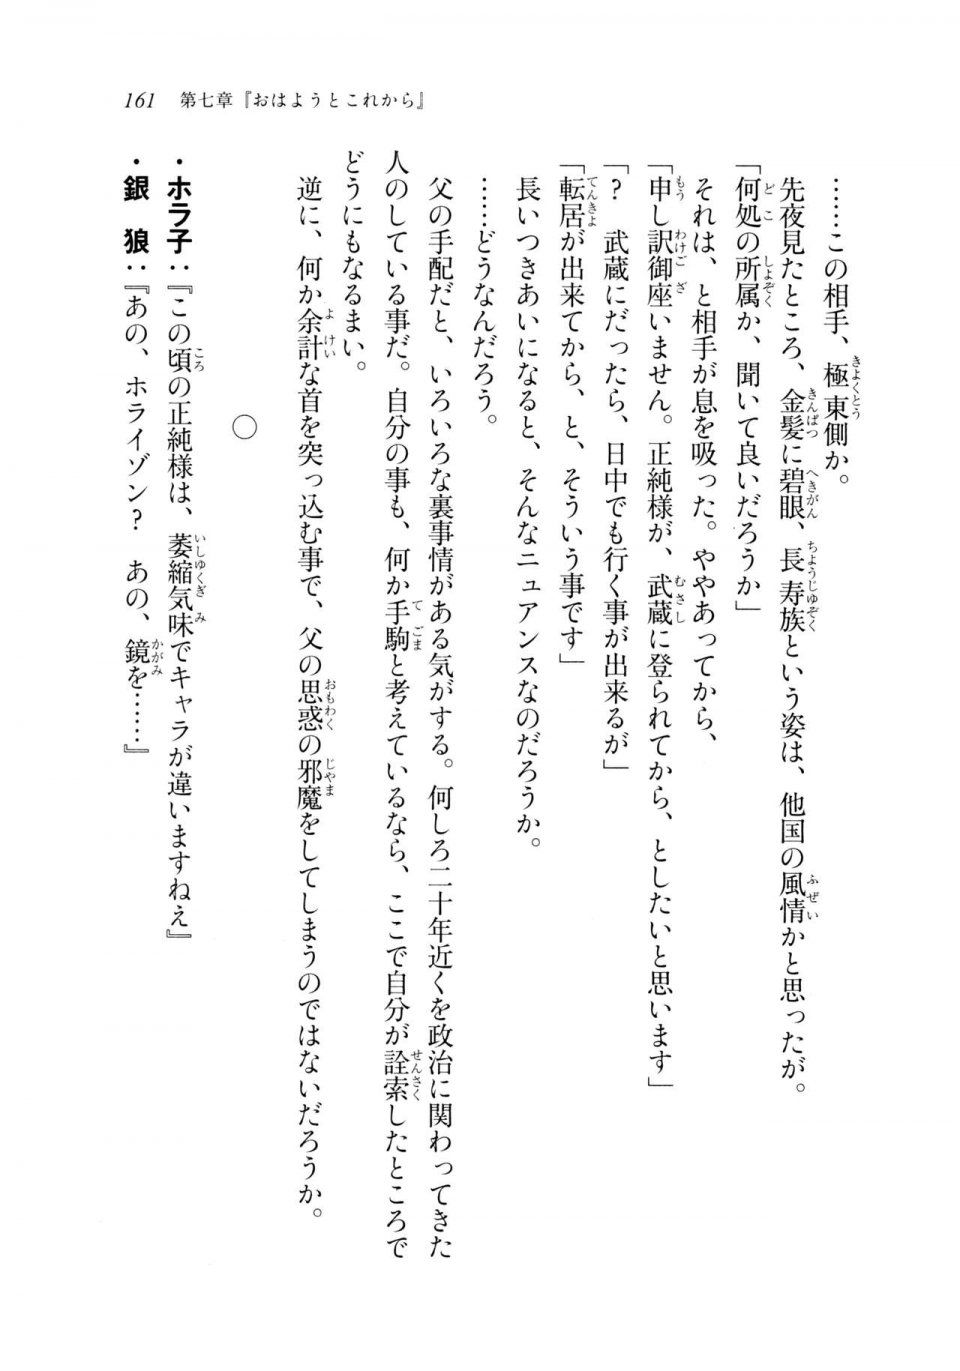 Kyoukai Senjou no Horizon LN Sidestory Vol 2 - Photo #159